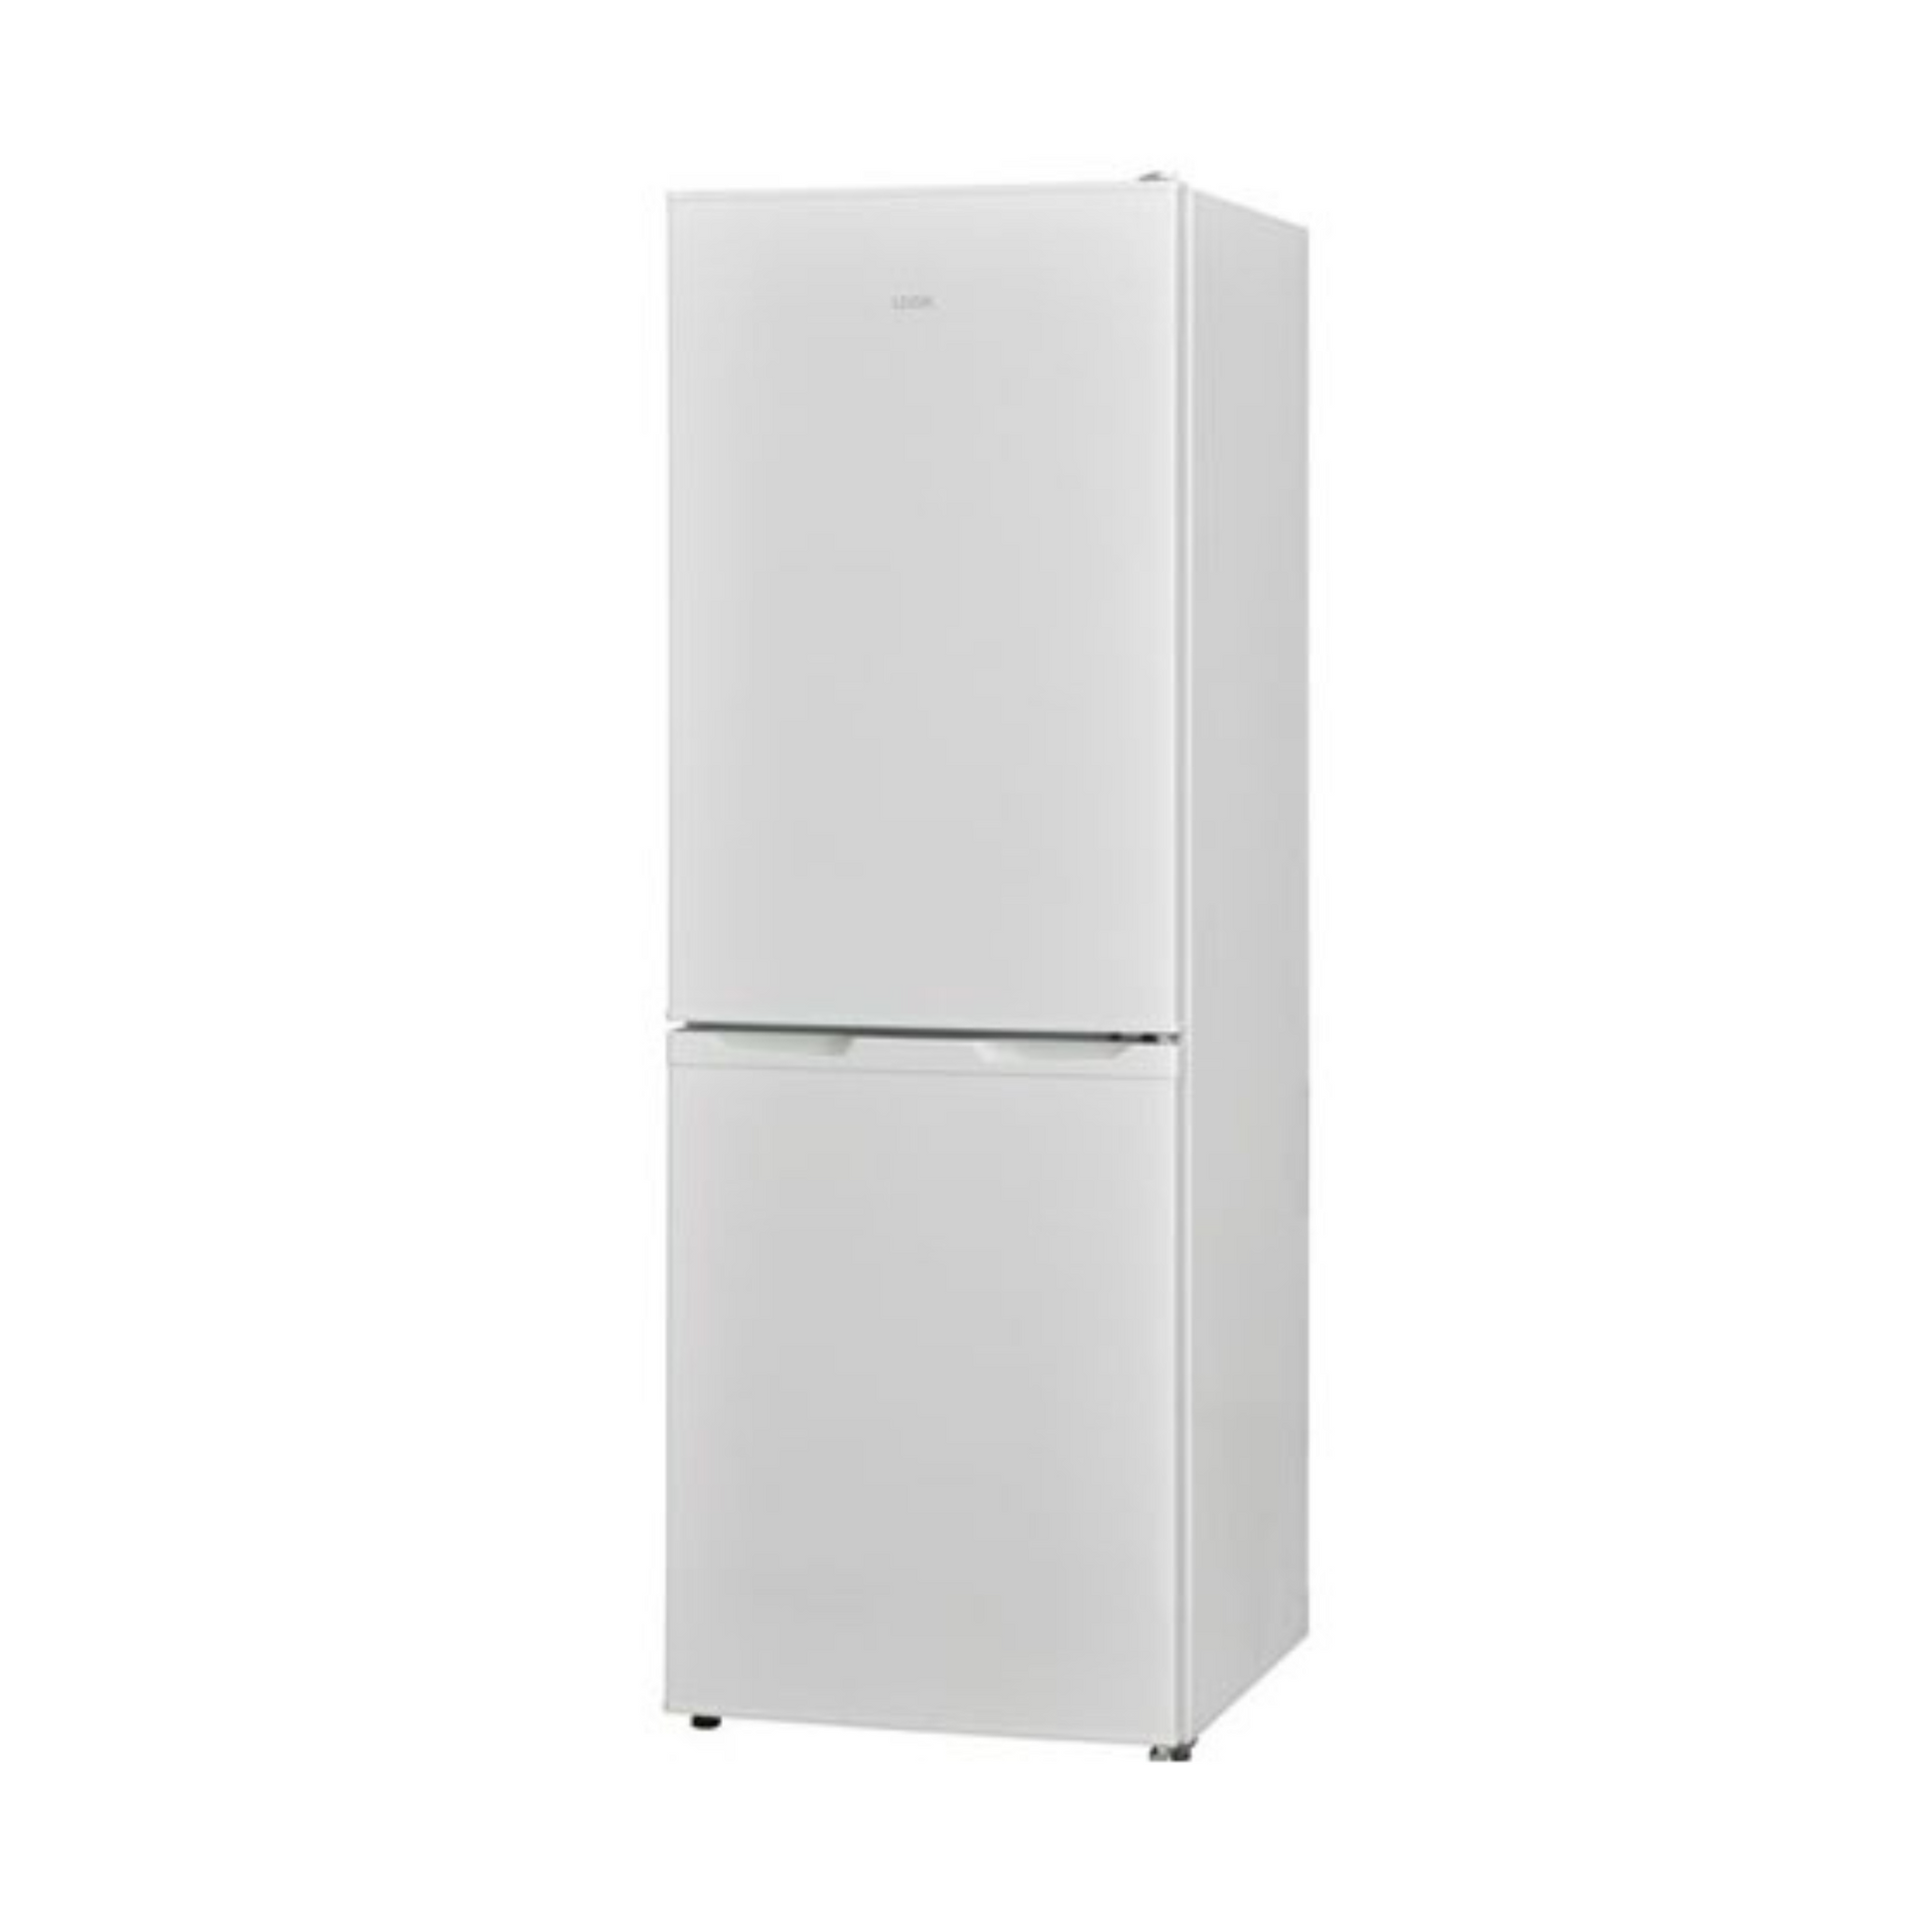 Logik 172L Double Door Refrigerator, L50BW22